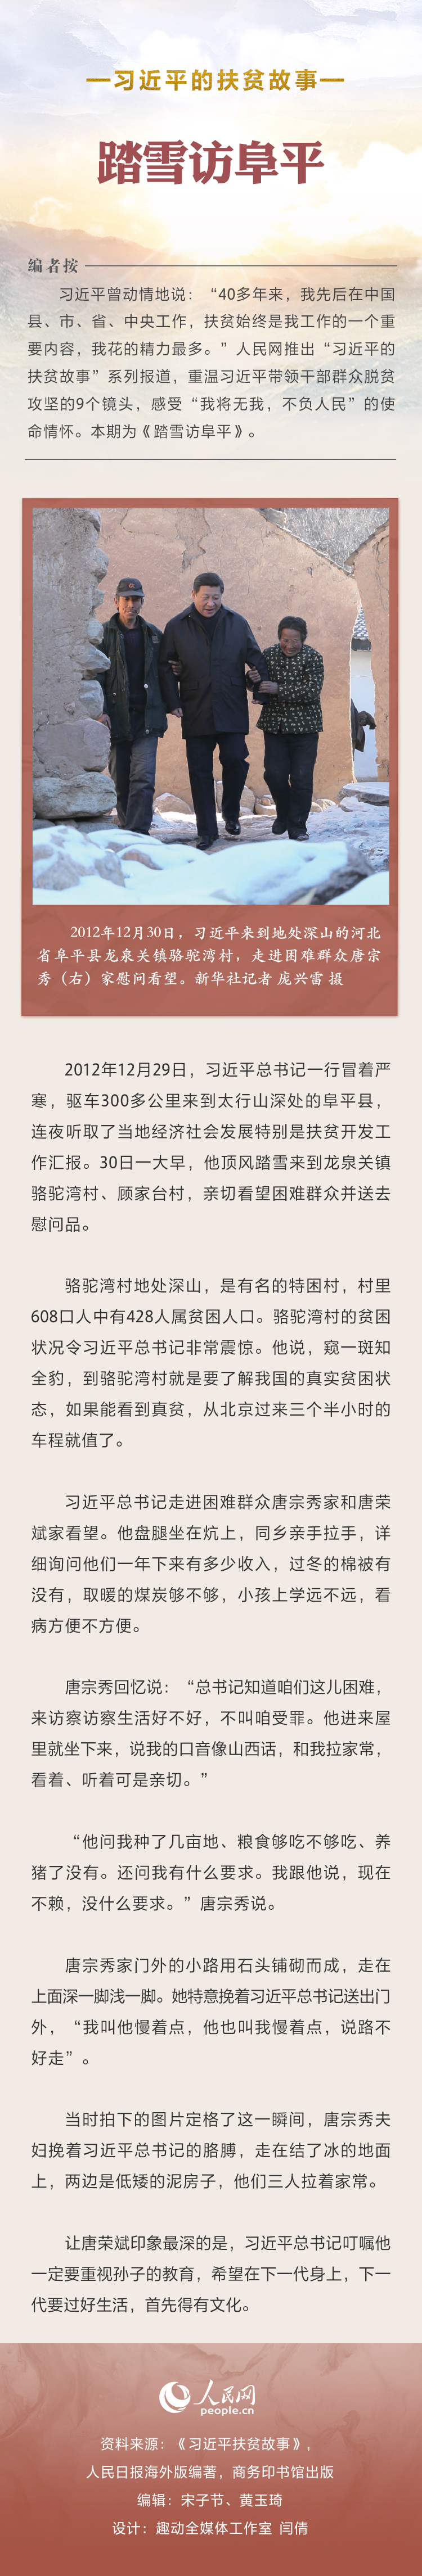 人民网-中国共产党新闻网.jpg